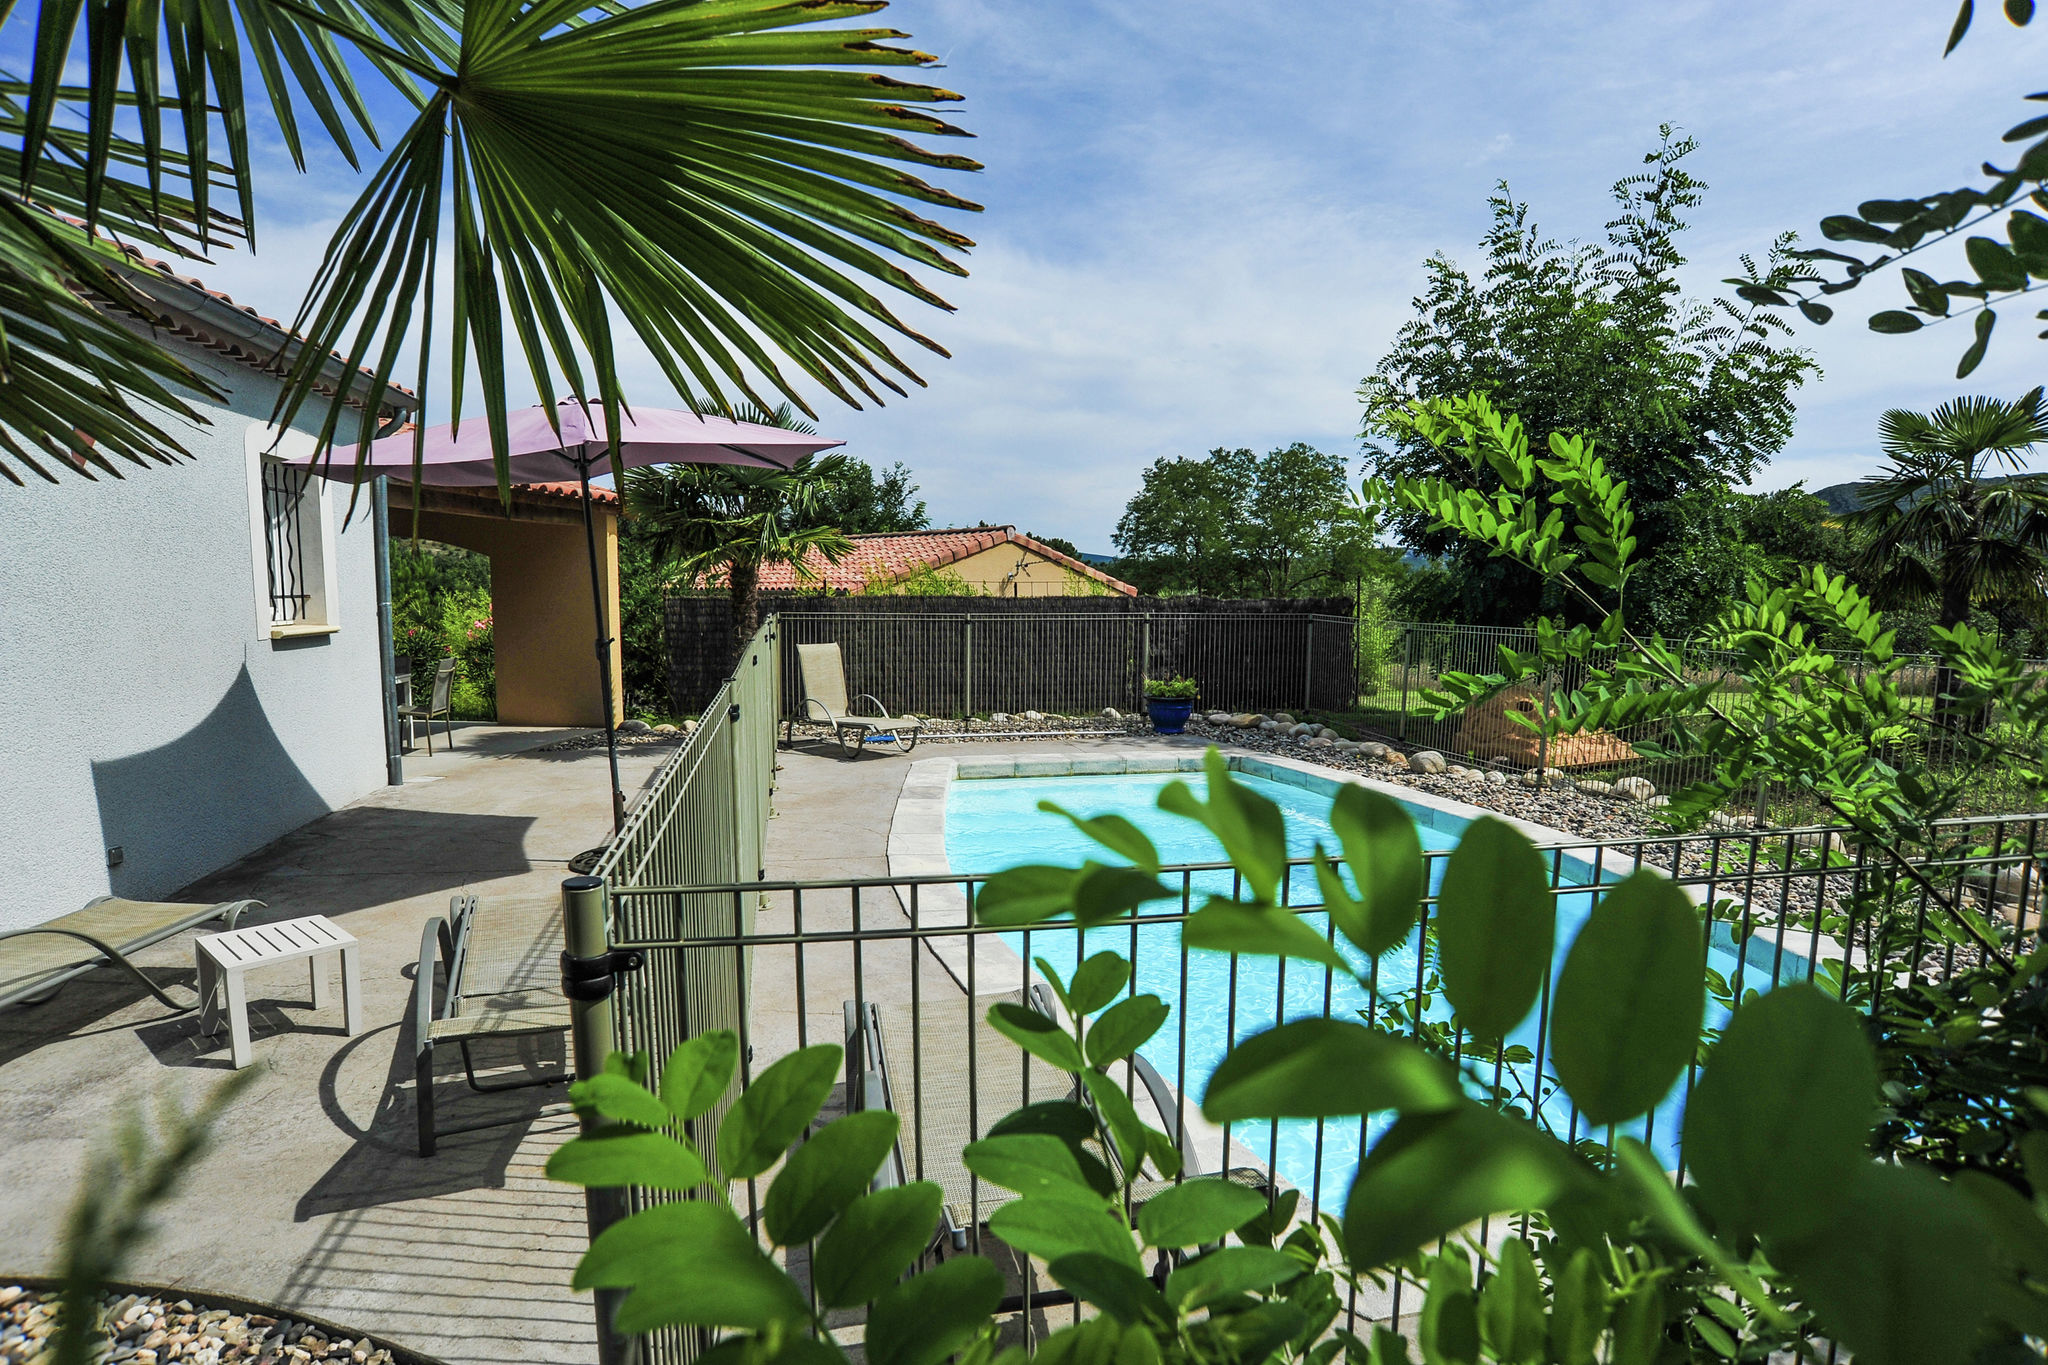 Villa mit privatem Pool in der Nähe des Flusses Ardèche